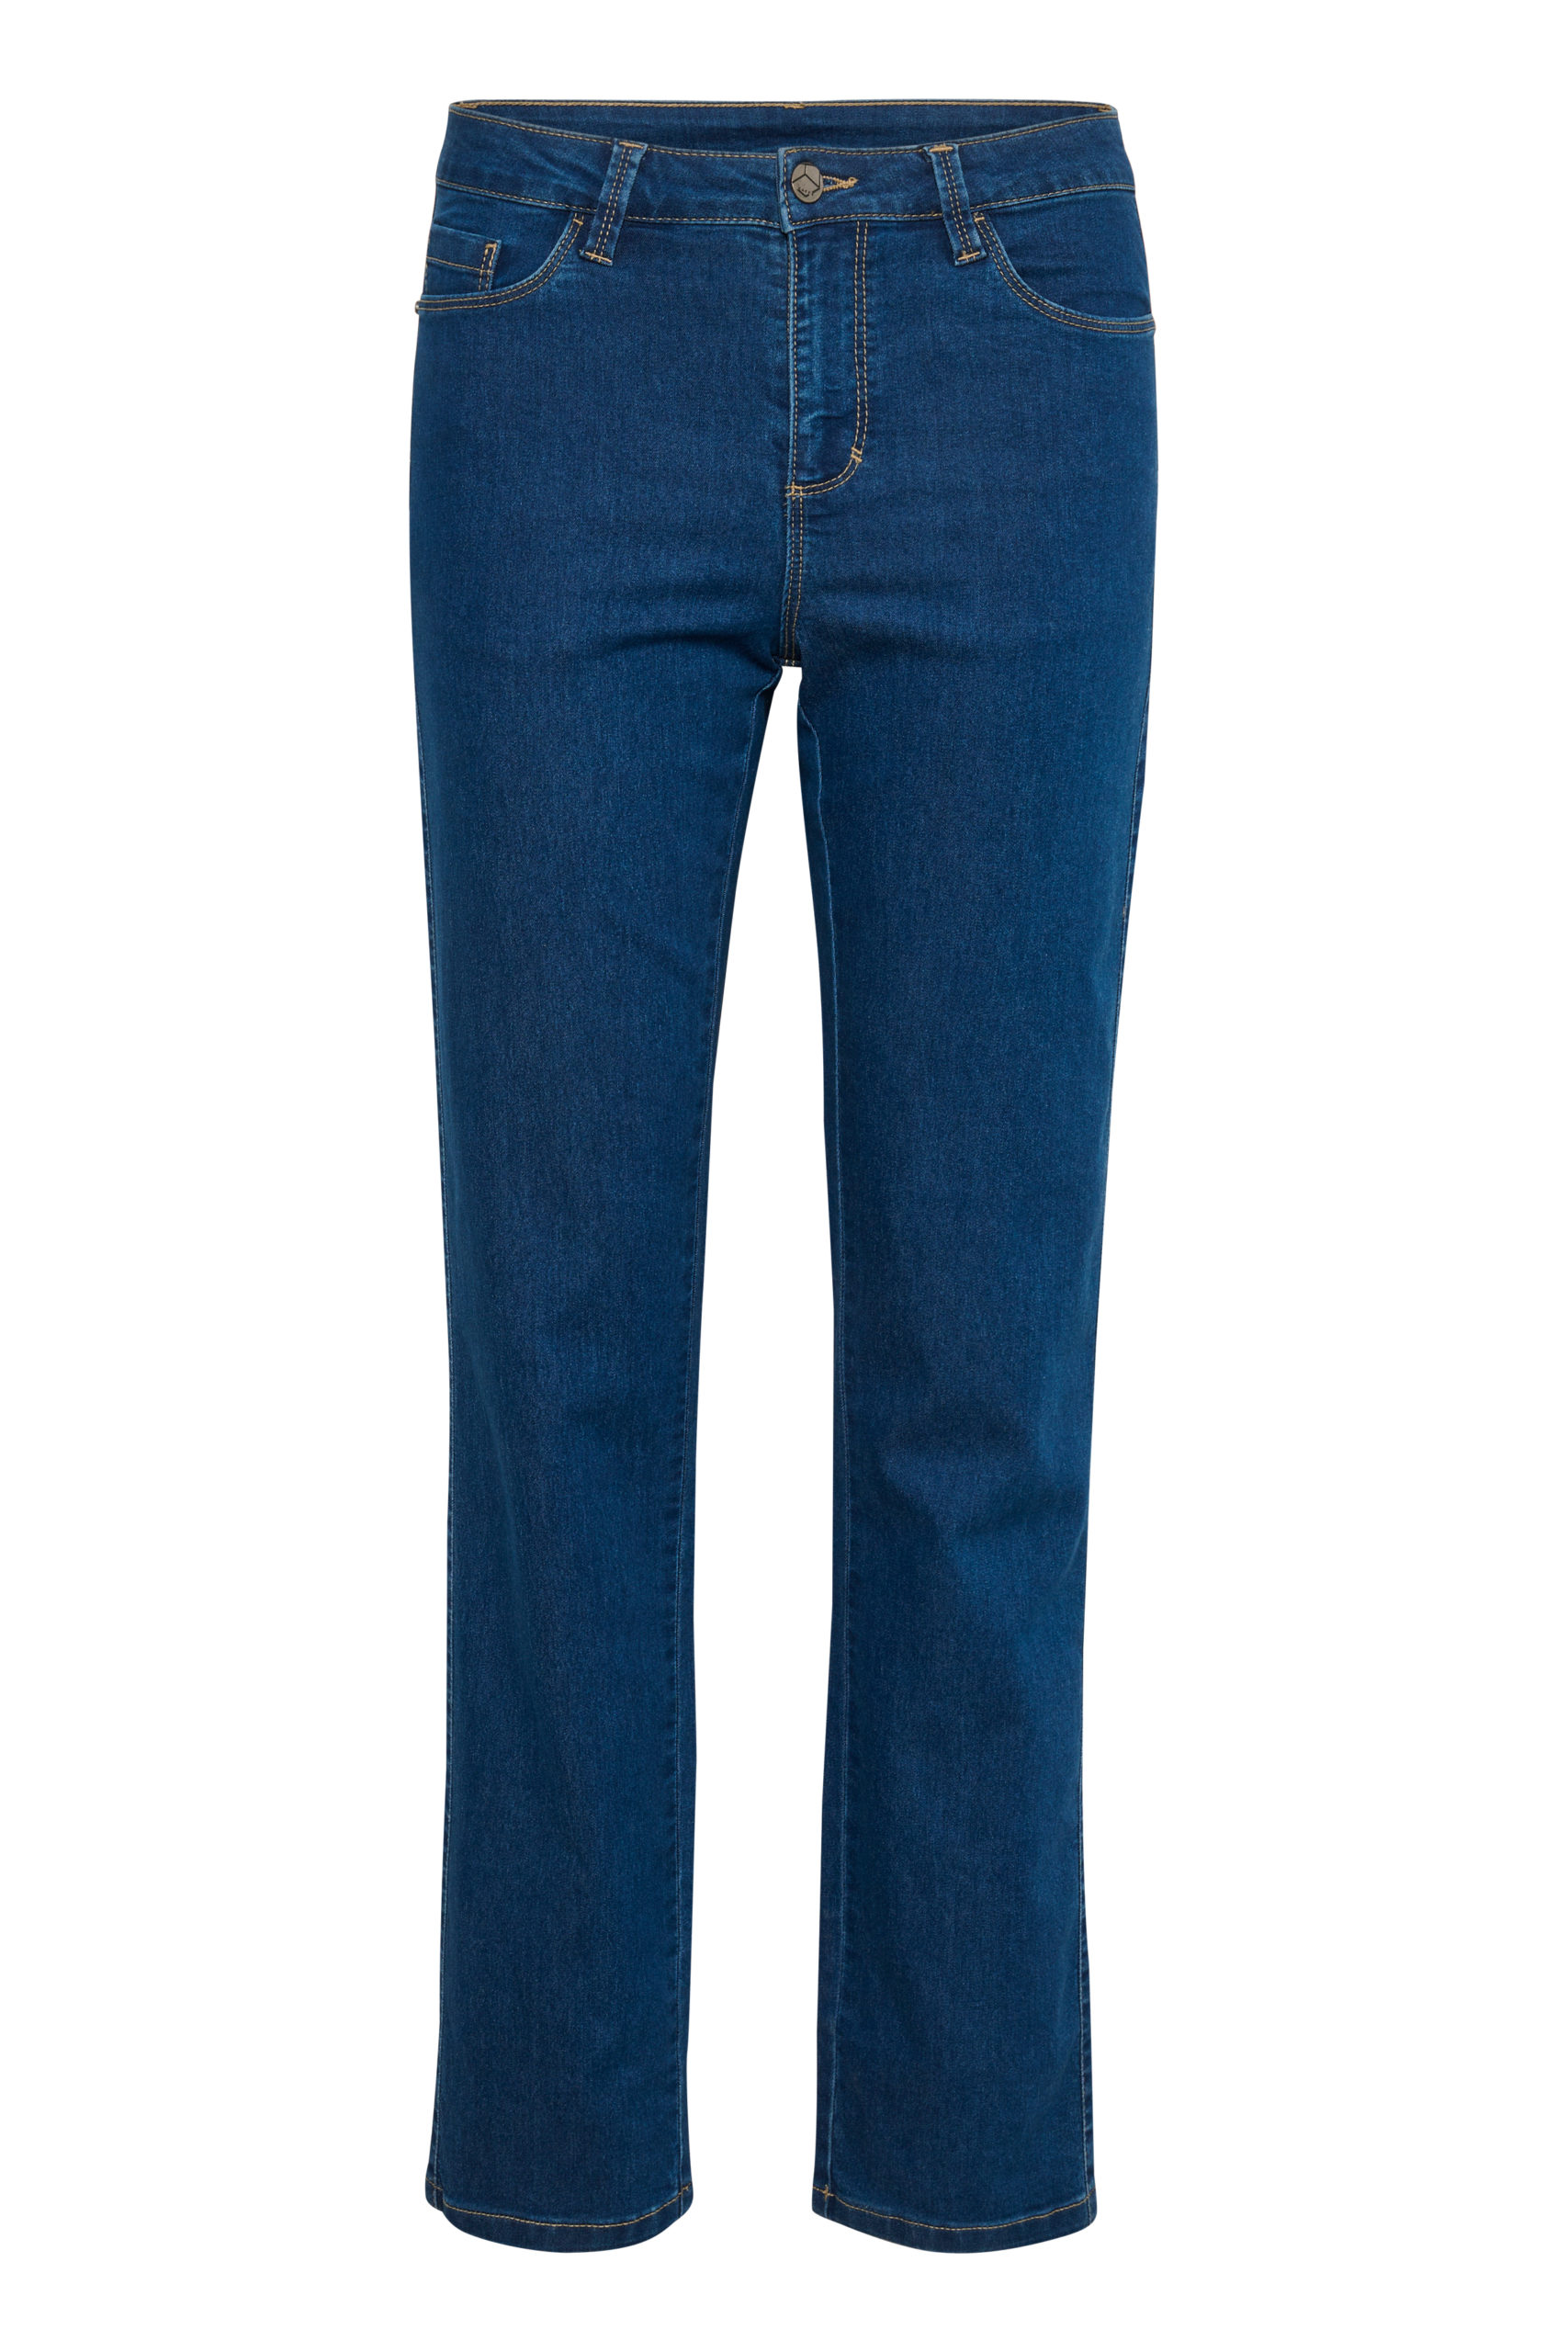 KAvicky Straight Blue Jeans item front